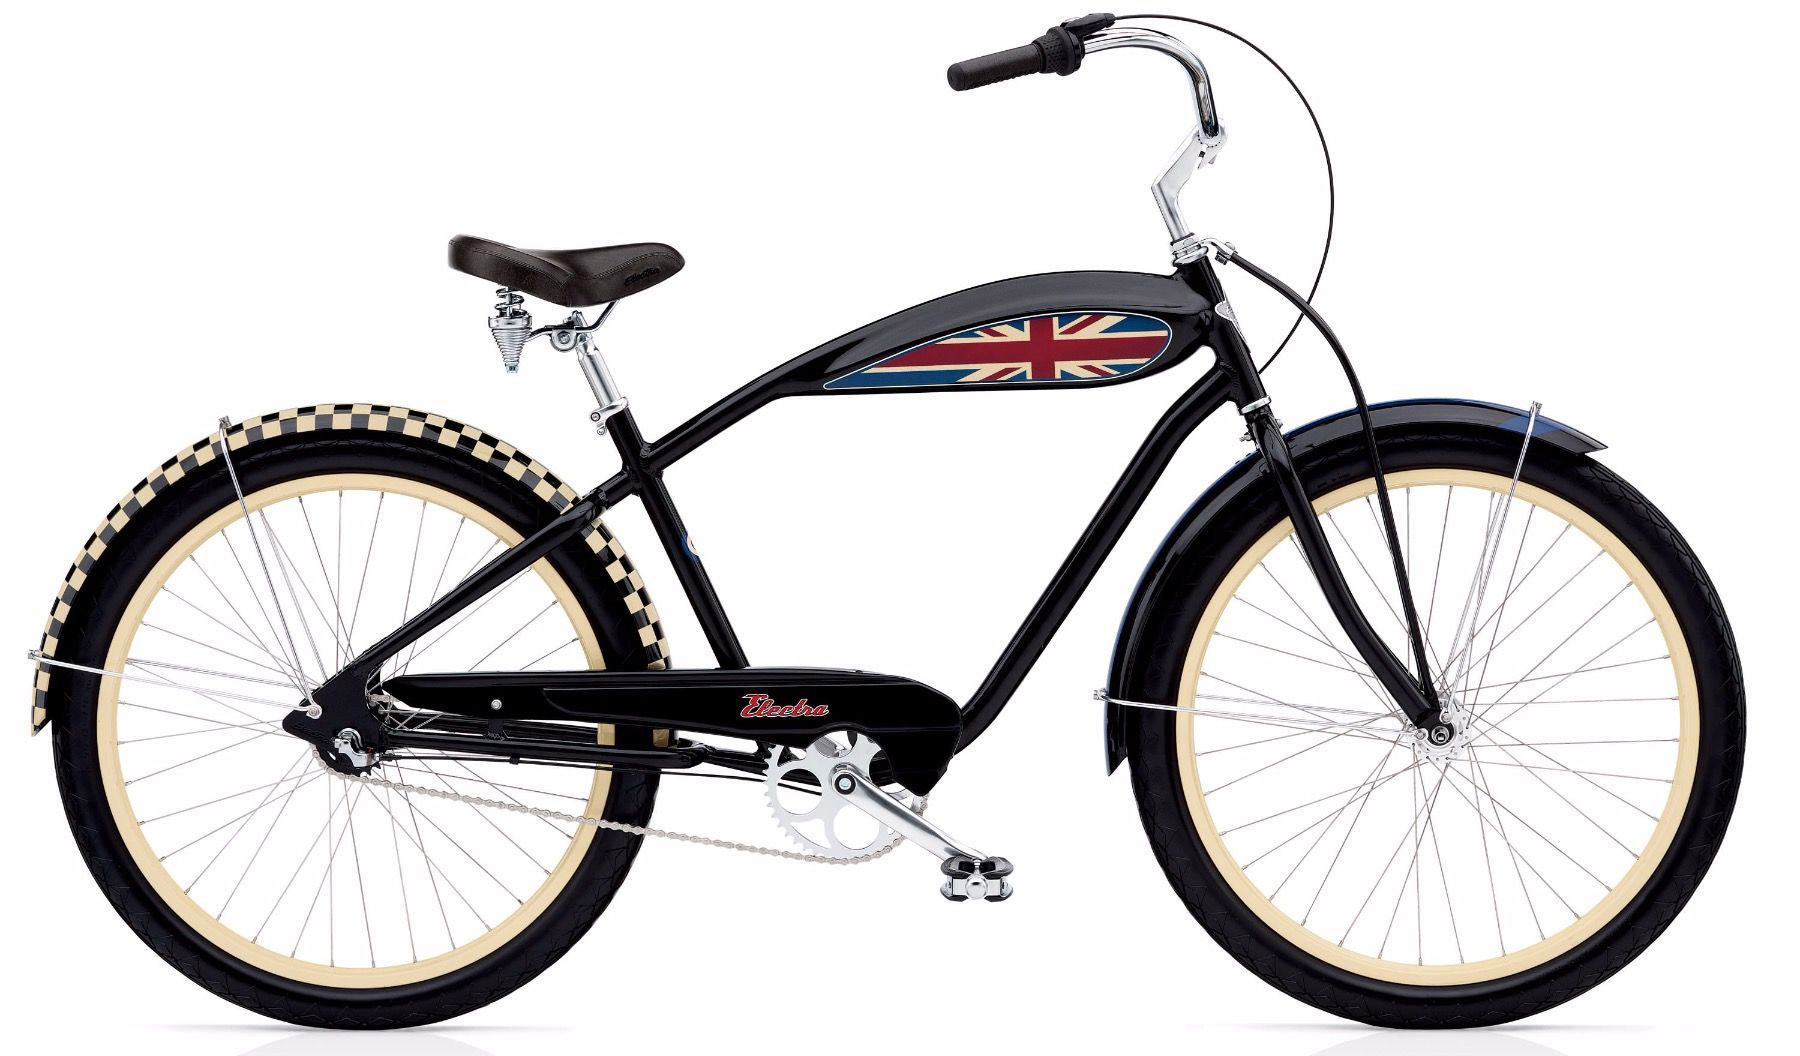  Отзывы о Велосипеде круизере Electra Cruiser Mod 3i 2020